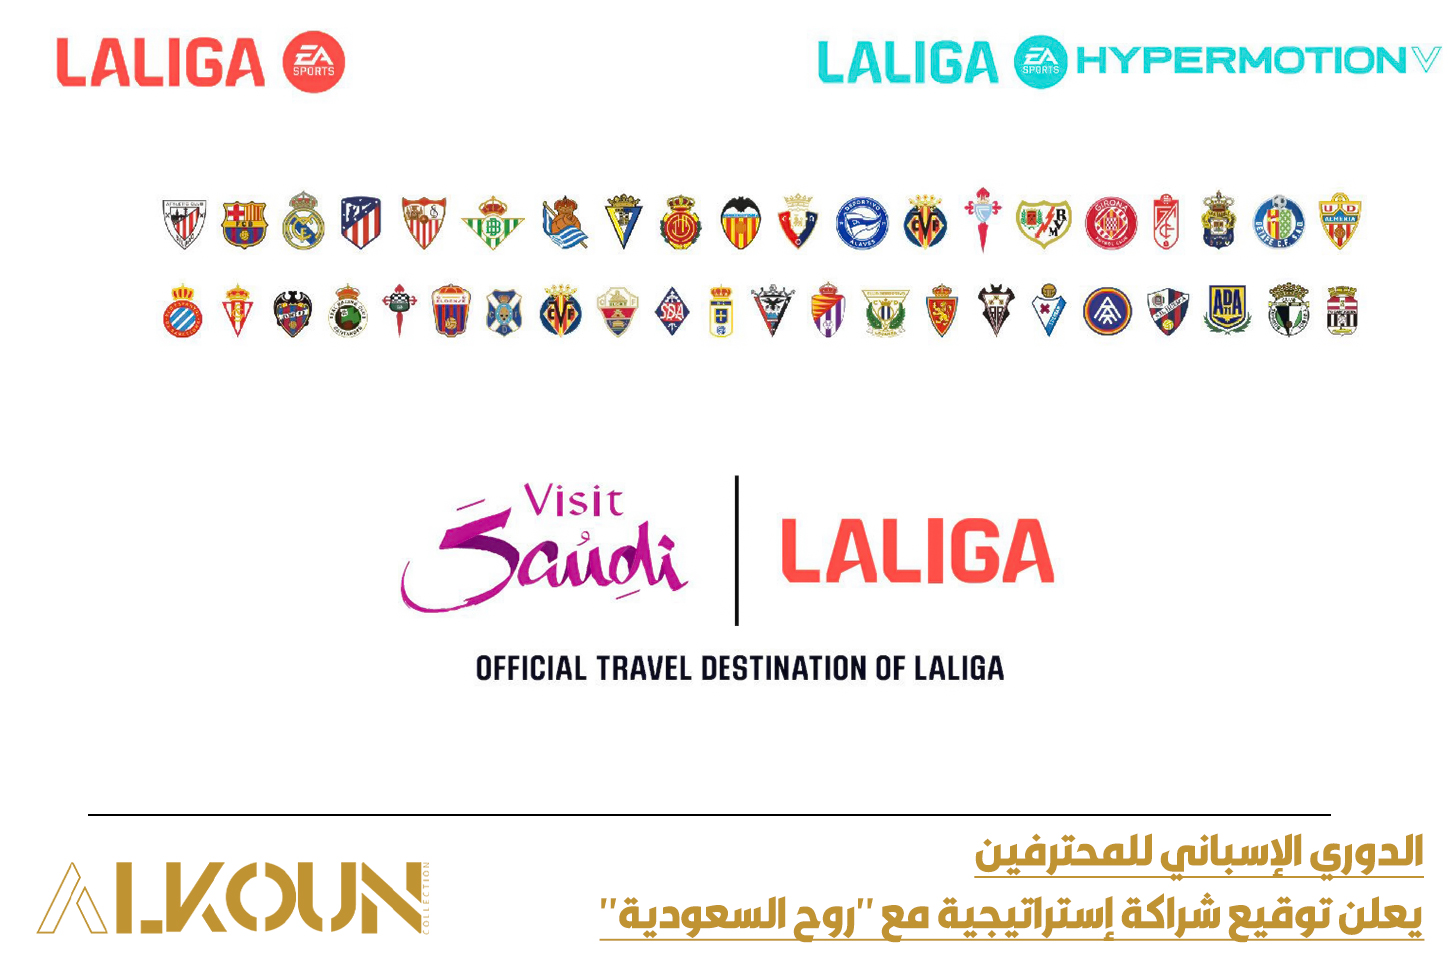 الدوري الإسباني للمحترفين يعلن توقيع شراكة إستراتيجية مع "روح السعودية"